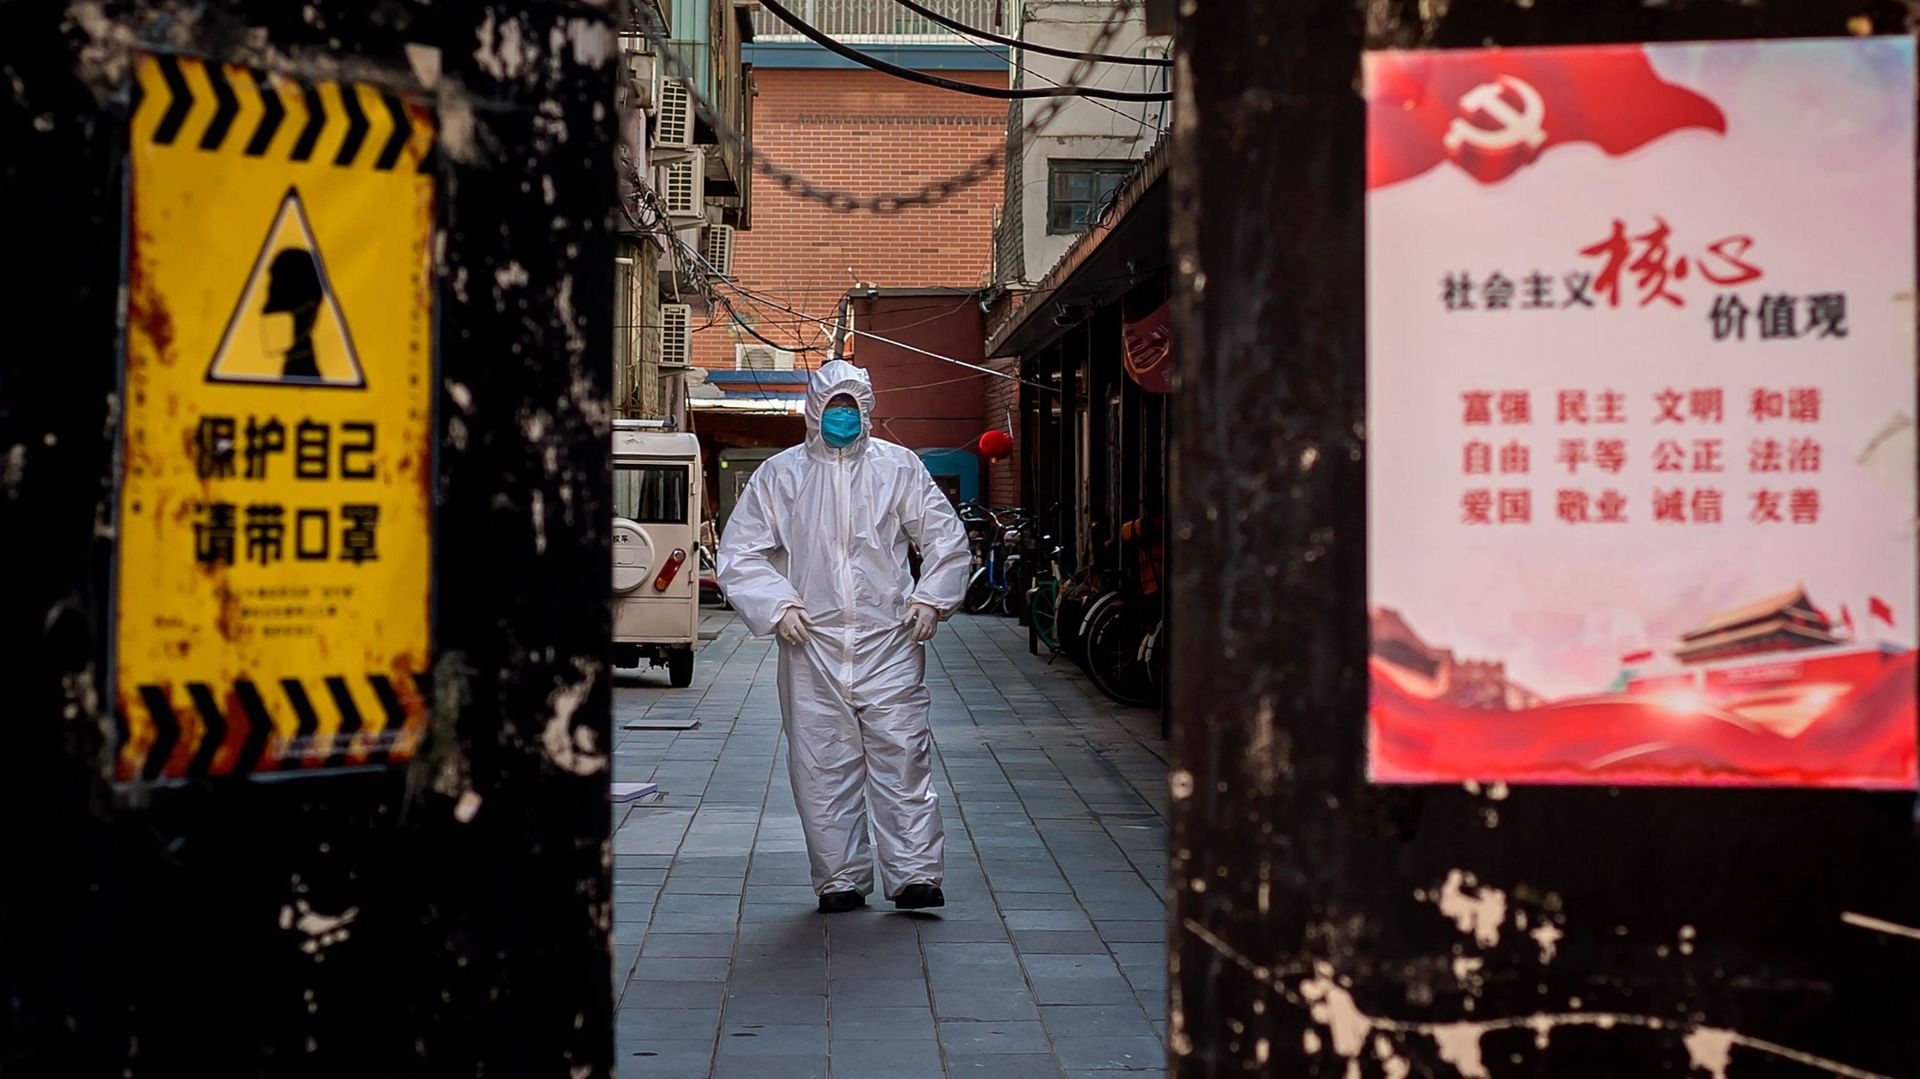 Un homme en tenue de protection à l’extérieur d’un bâtiment résidentiel où une personne a été détectée malade à Pékin. Un avis sur la porte d’entrée indique "protégez-vous", à côté d’une affiche de propagande du gouvernement.